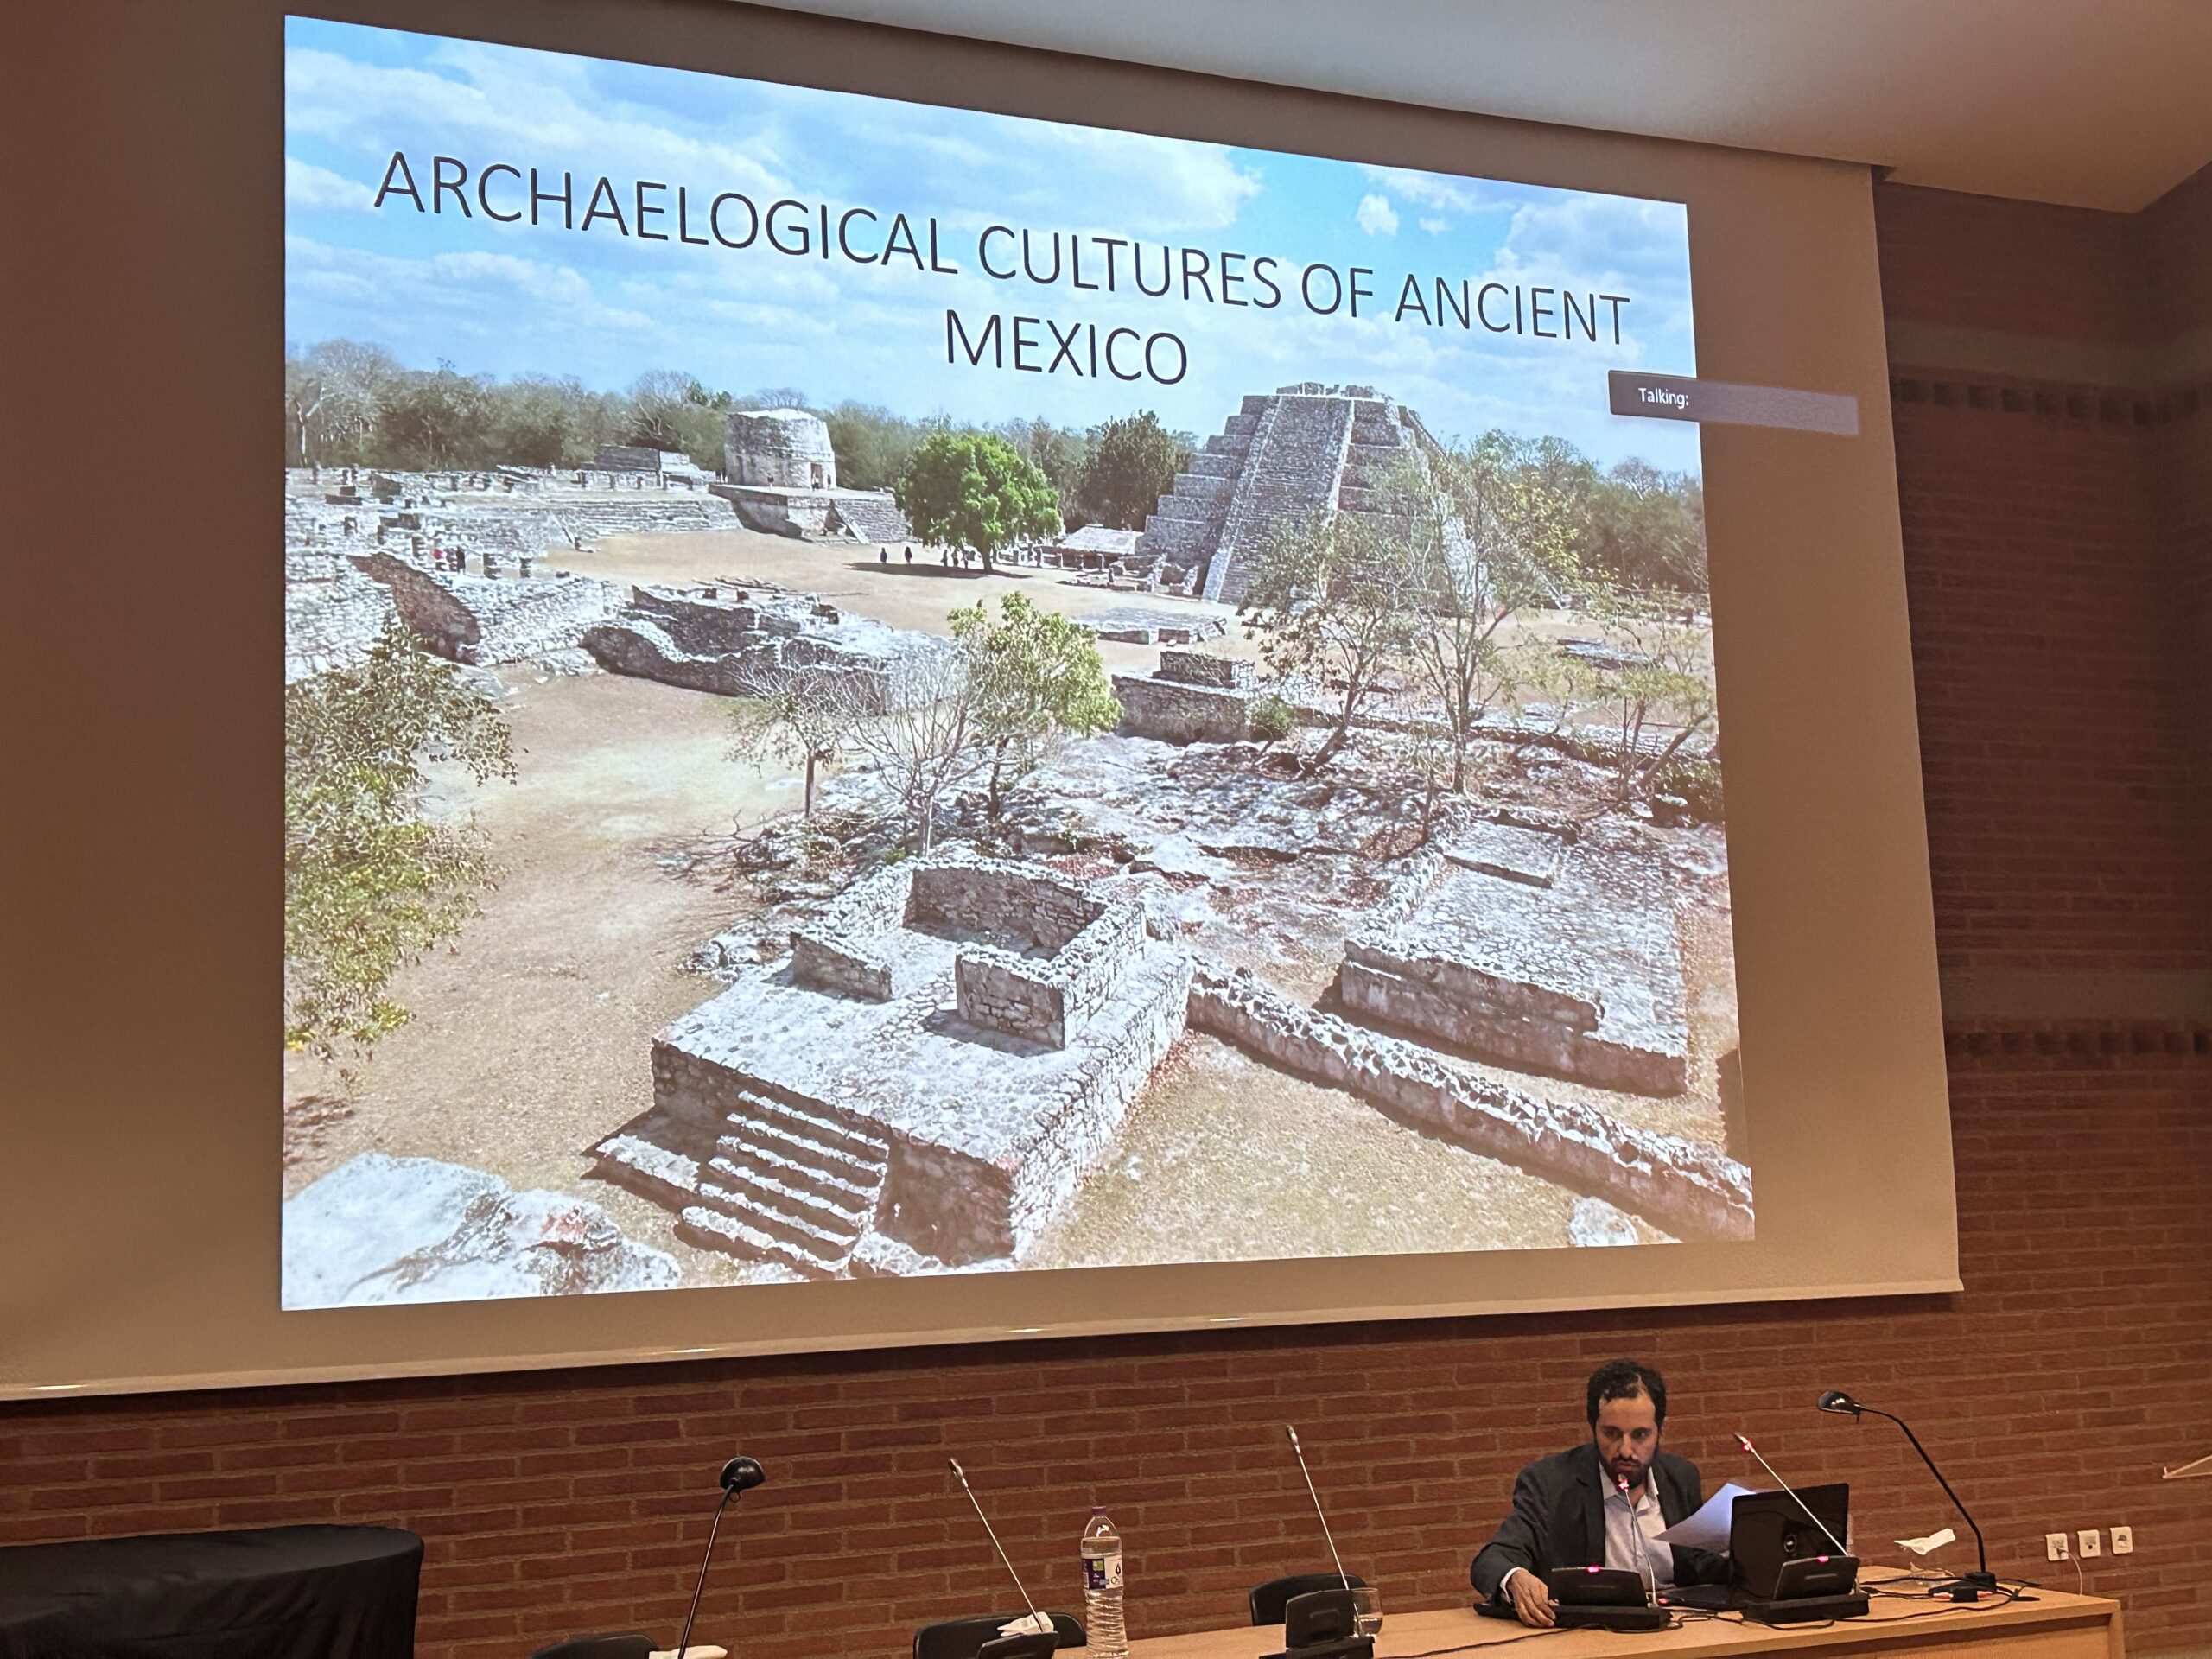 Ο πολιτισμός του Μεξικού συναντά τη Σύγχρονη Ελλάδα στην αρχαιολογία, την ιστορία, την τέχνη και τη διατροφή